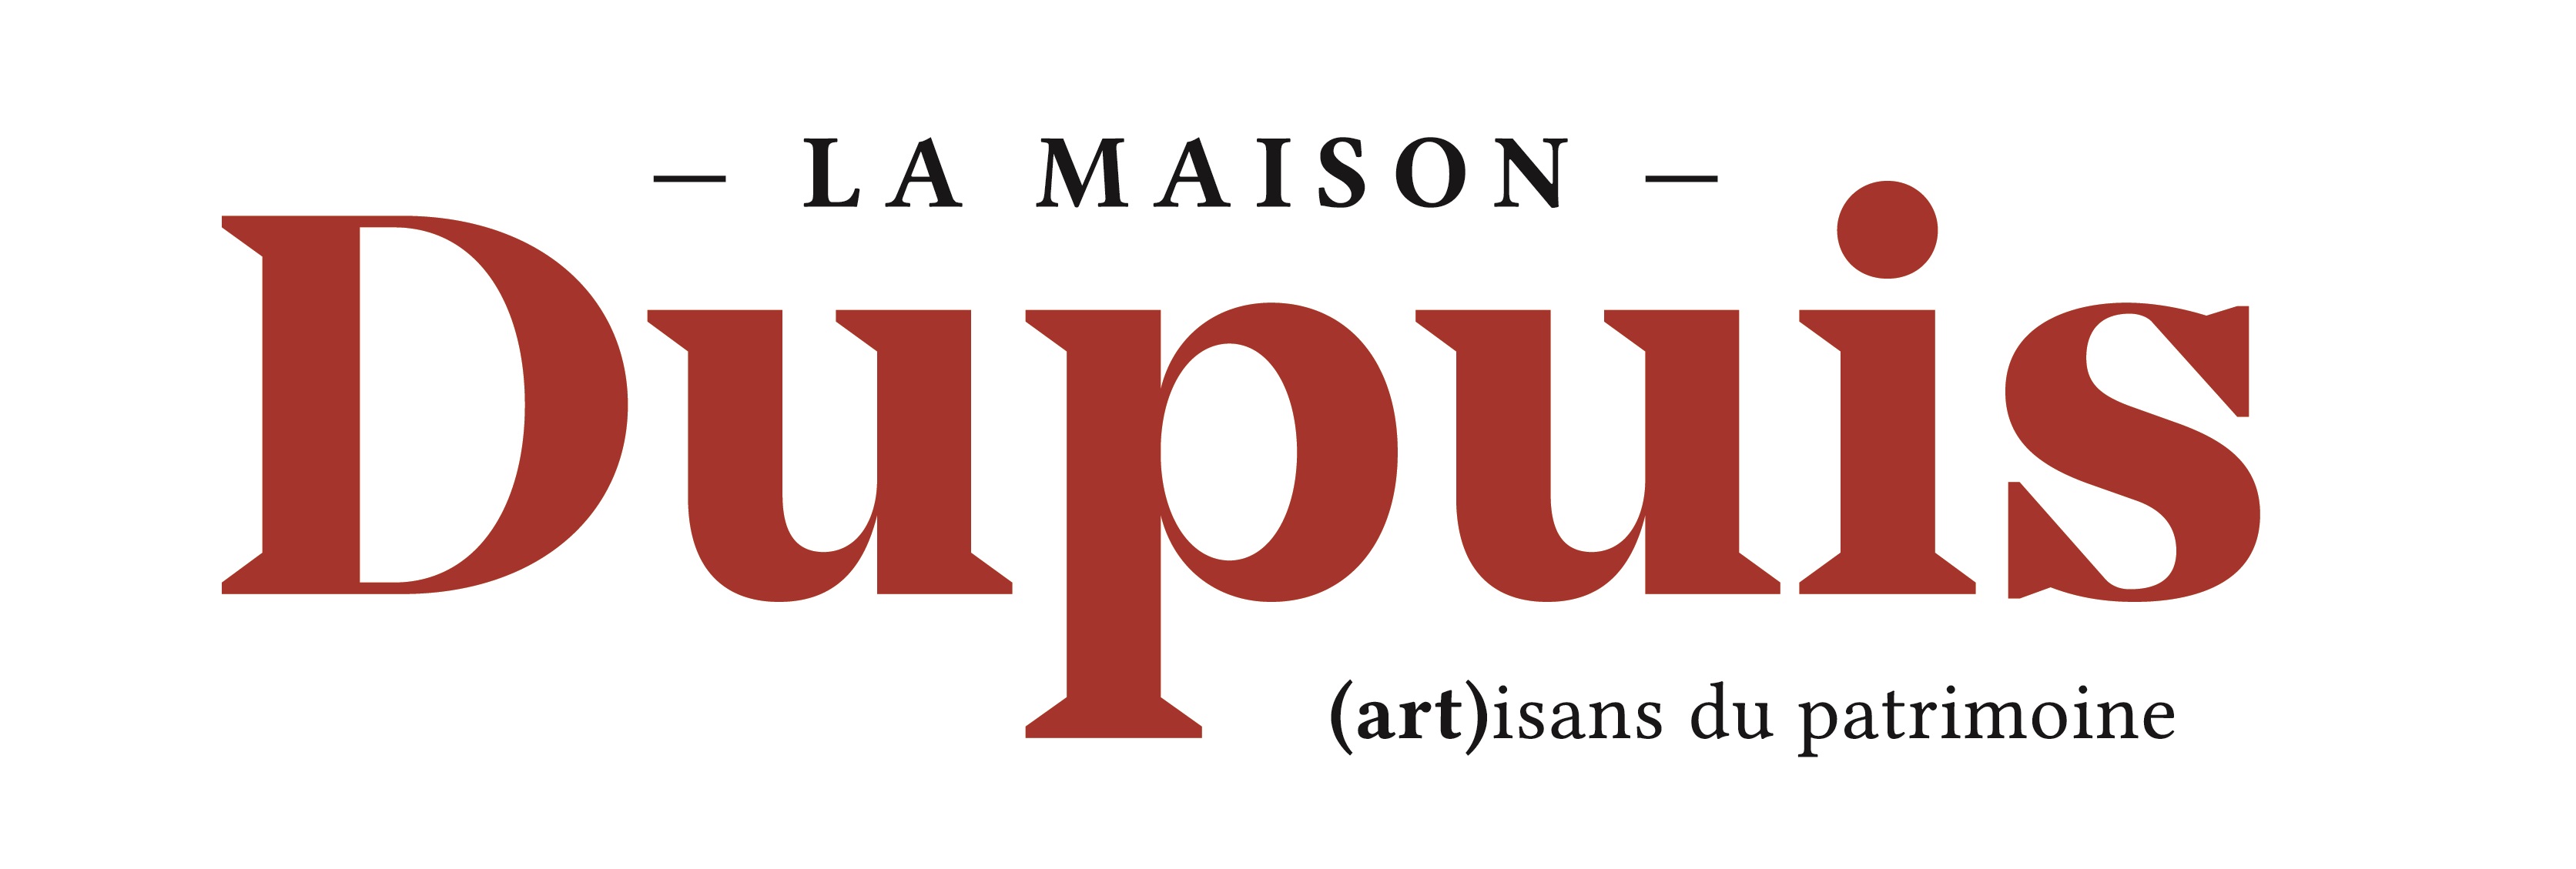 https://rouenmetrobasket.com/wp-content/uploads/2019/09/Logo_la_maison_dupuis_couleurs-2.jpg